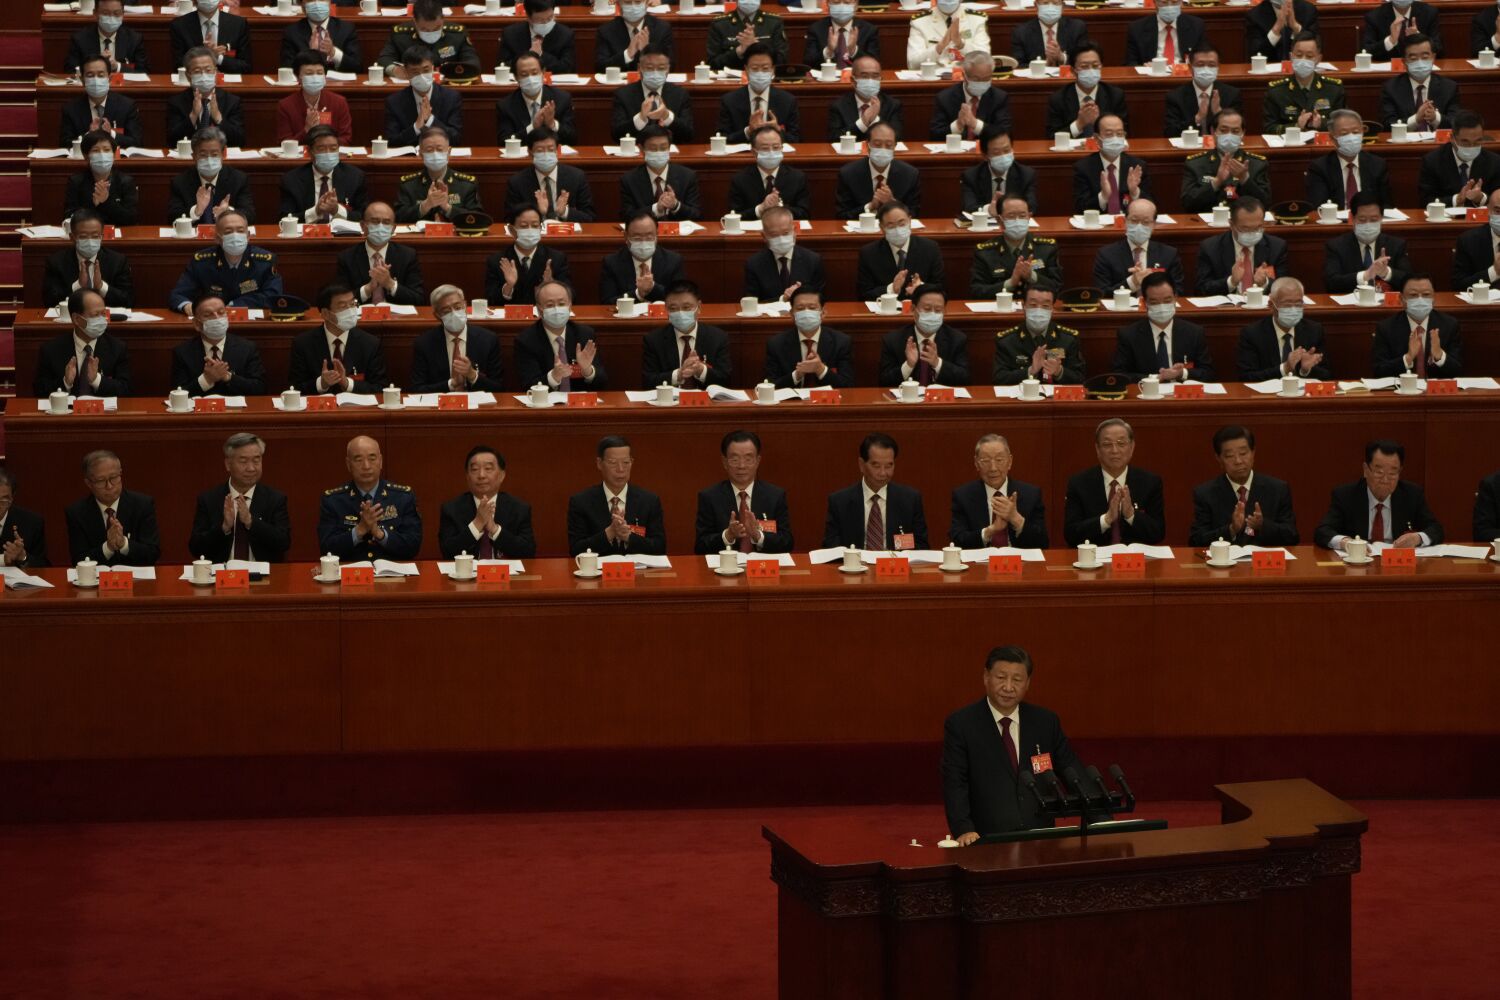 Çin Komünist Partisi Kongresi, Xi Jinping'in tam kontrol arayışında yeni bir kilometre taşı sağlıyor